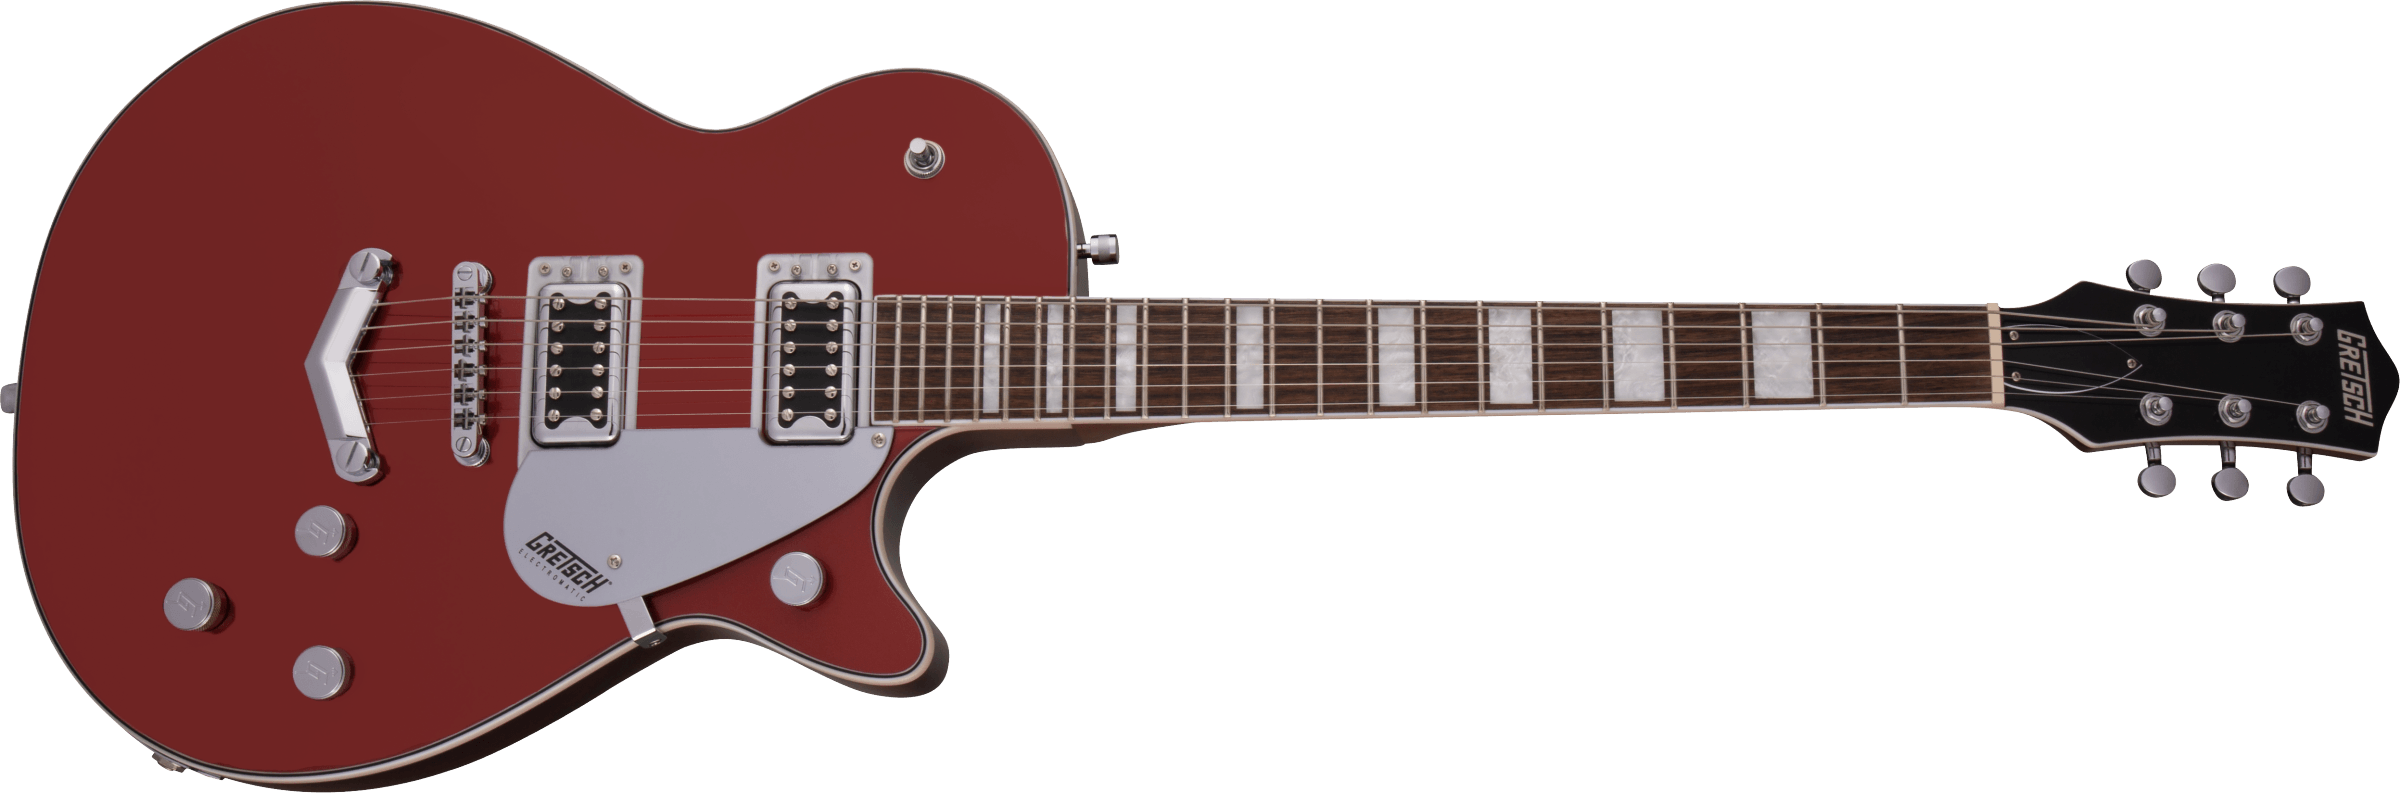 Gretsch G5220 Electromatic Jet Bt V-stoptail Hh Ht Lau - Firestick Red - Enkel gesneden elektrische gitaar - Variation 2